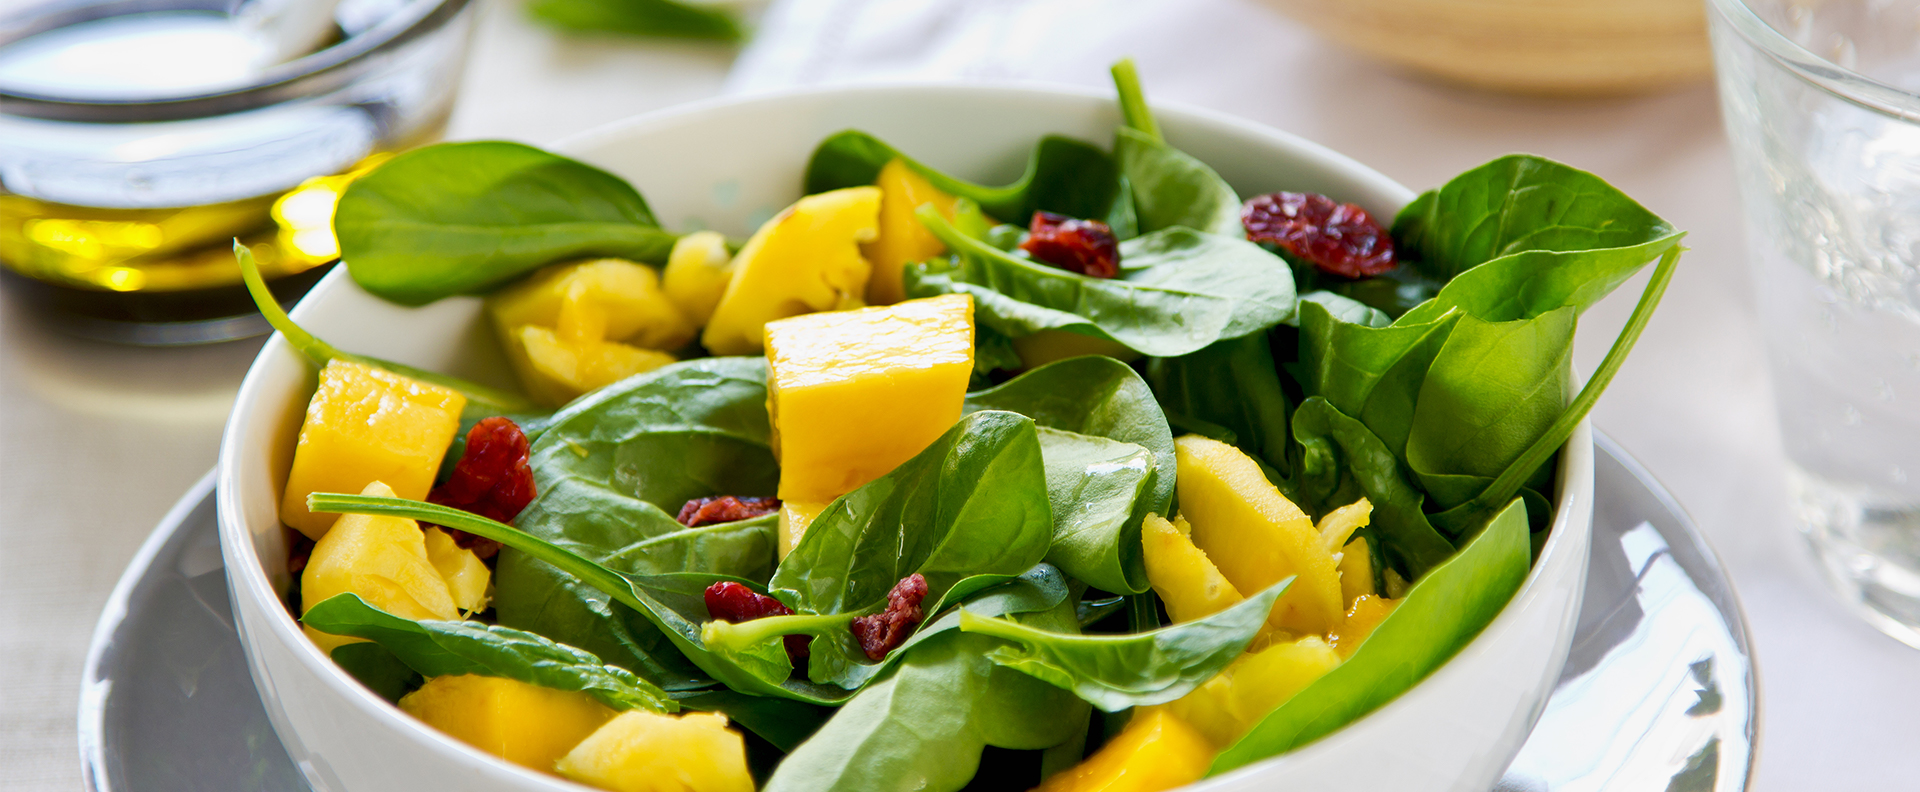 Confira uma receita de salada para fim de ano para surpreender! | Blog |  Obahortifruti